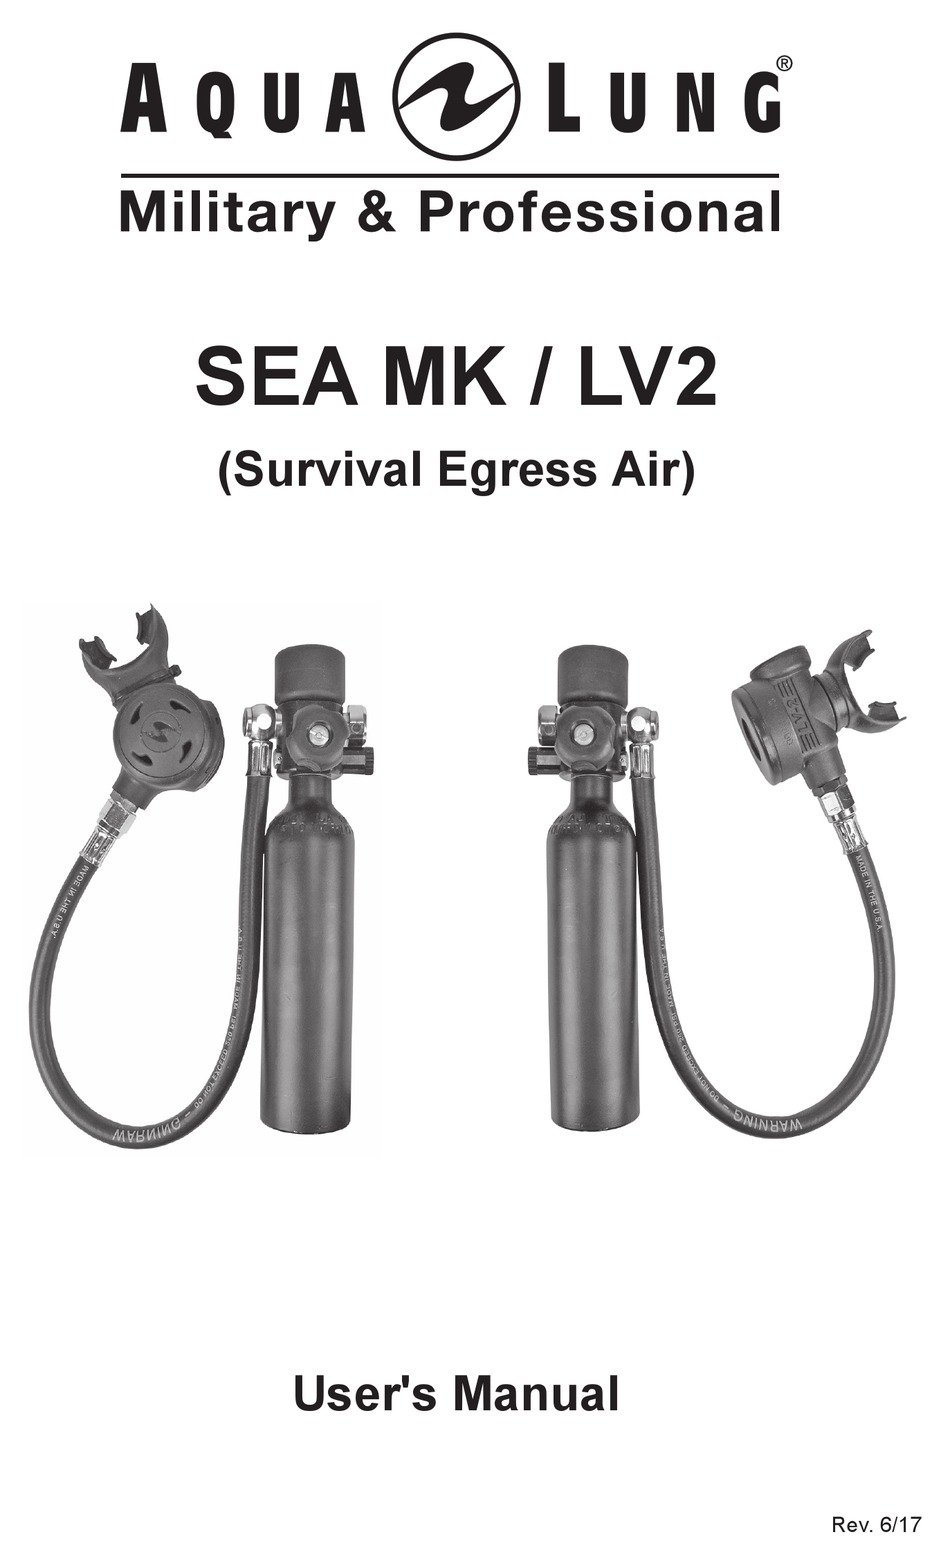 AQUA LUNG SEA MK DIVING INSTRUMENT USER MANUAL | ManualsLib